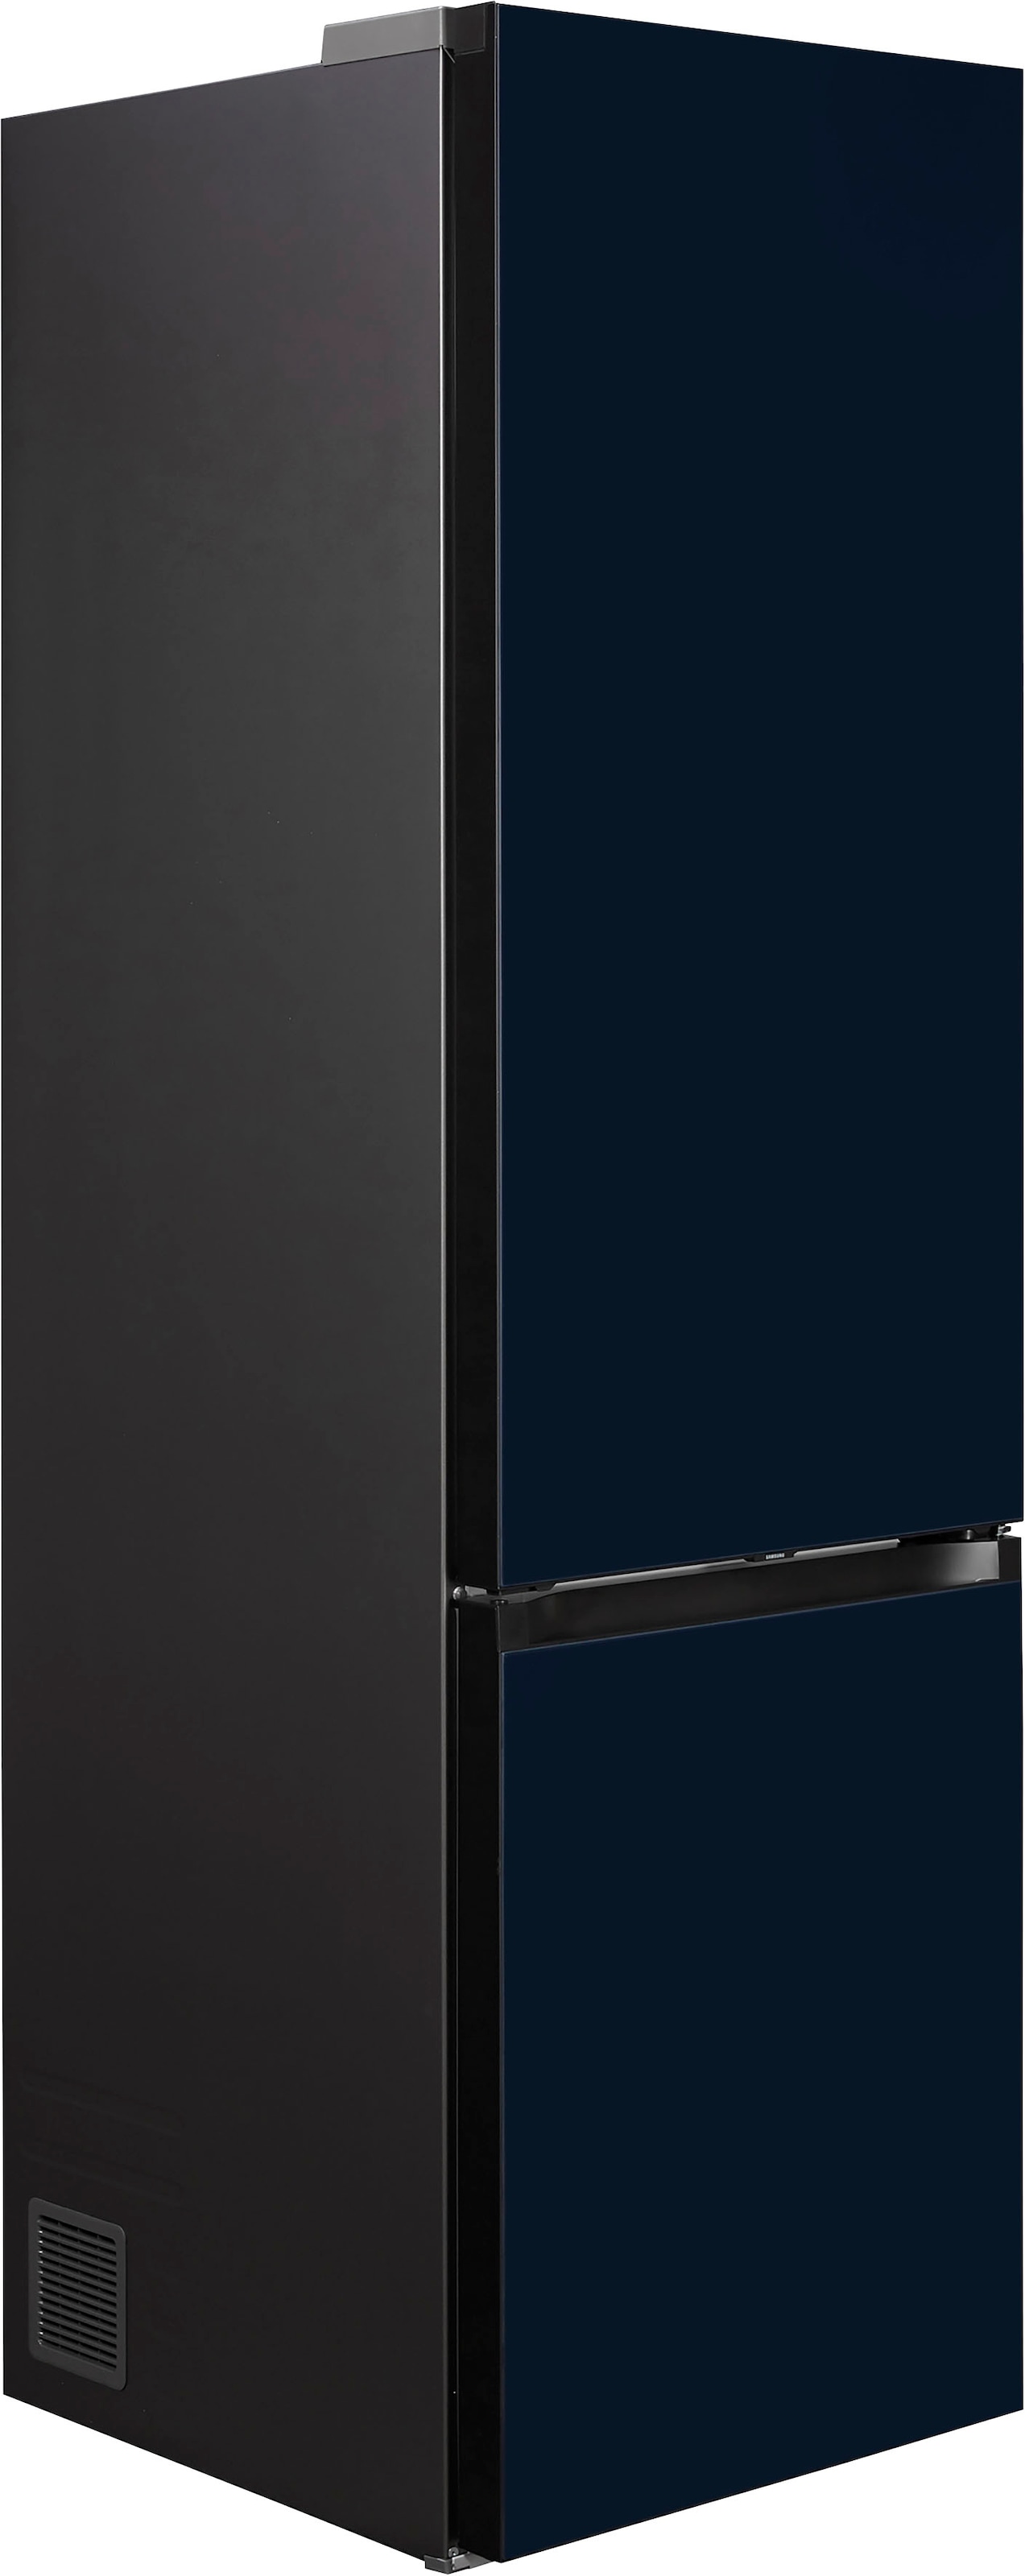 Samsung Kühl-/Gefrierkombination »RL38A6B6C41«, RL38A6B6C41, 203 cm hoch,  59,5 cm breit mit 3 Jahren XXL Garantie